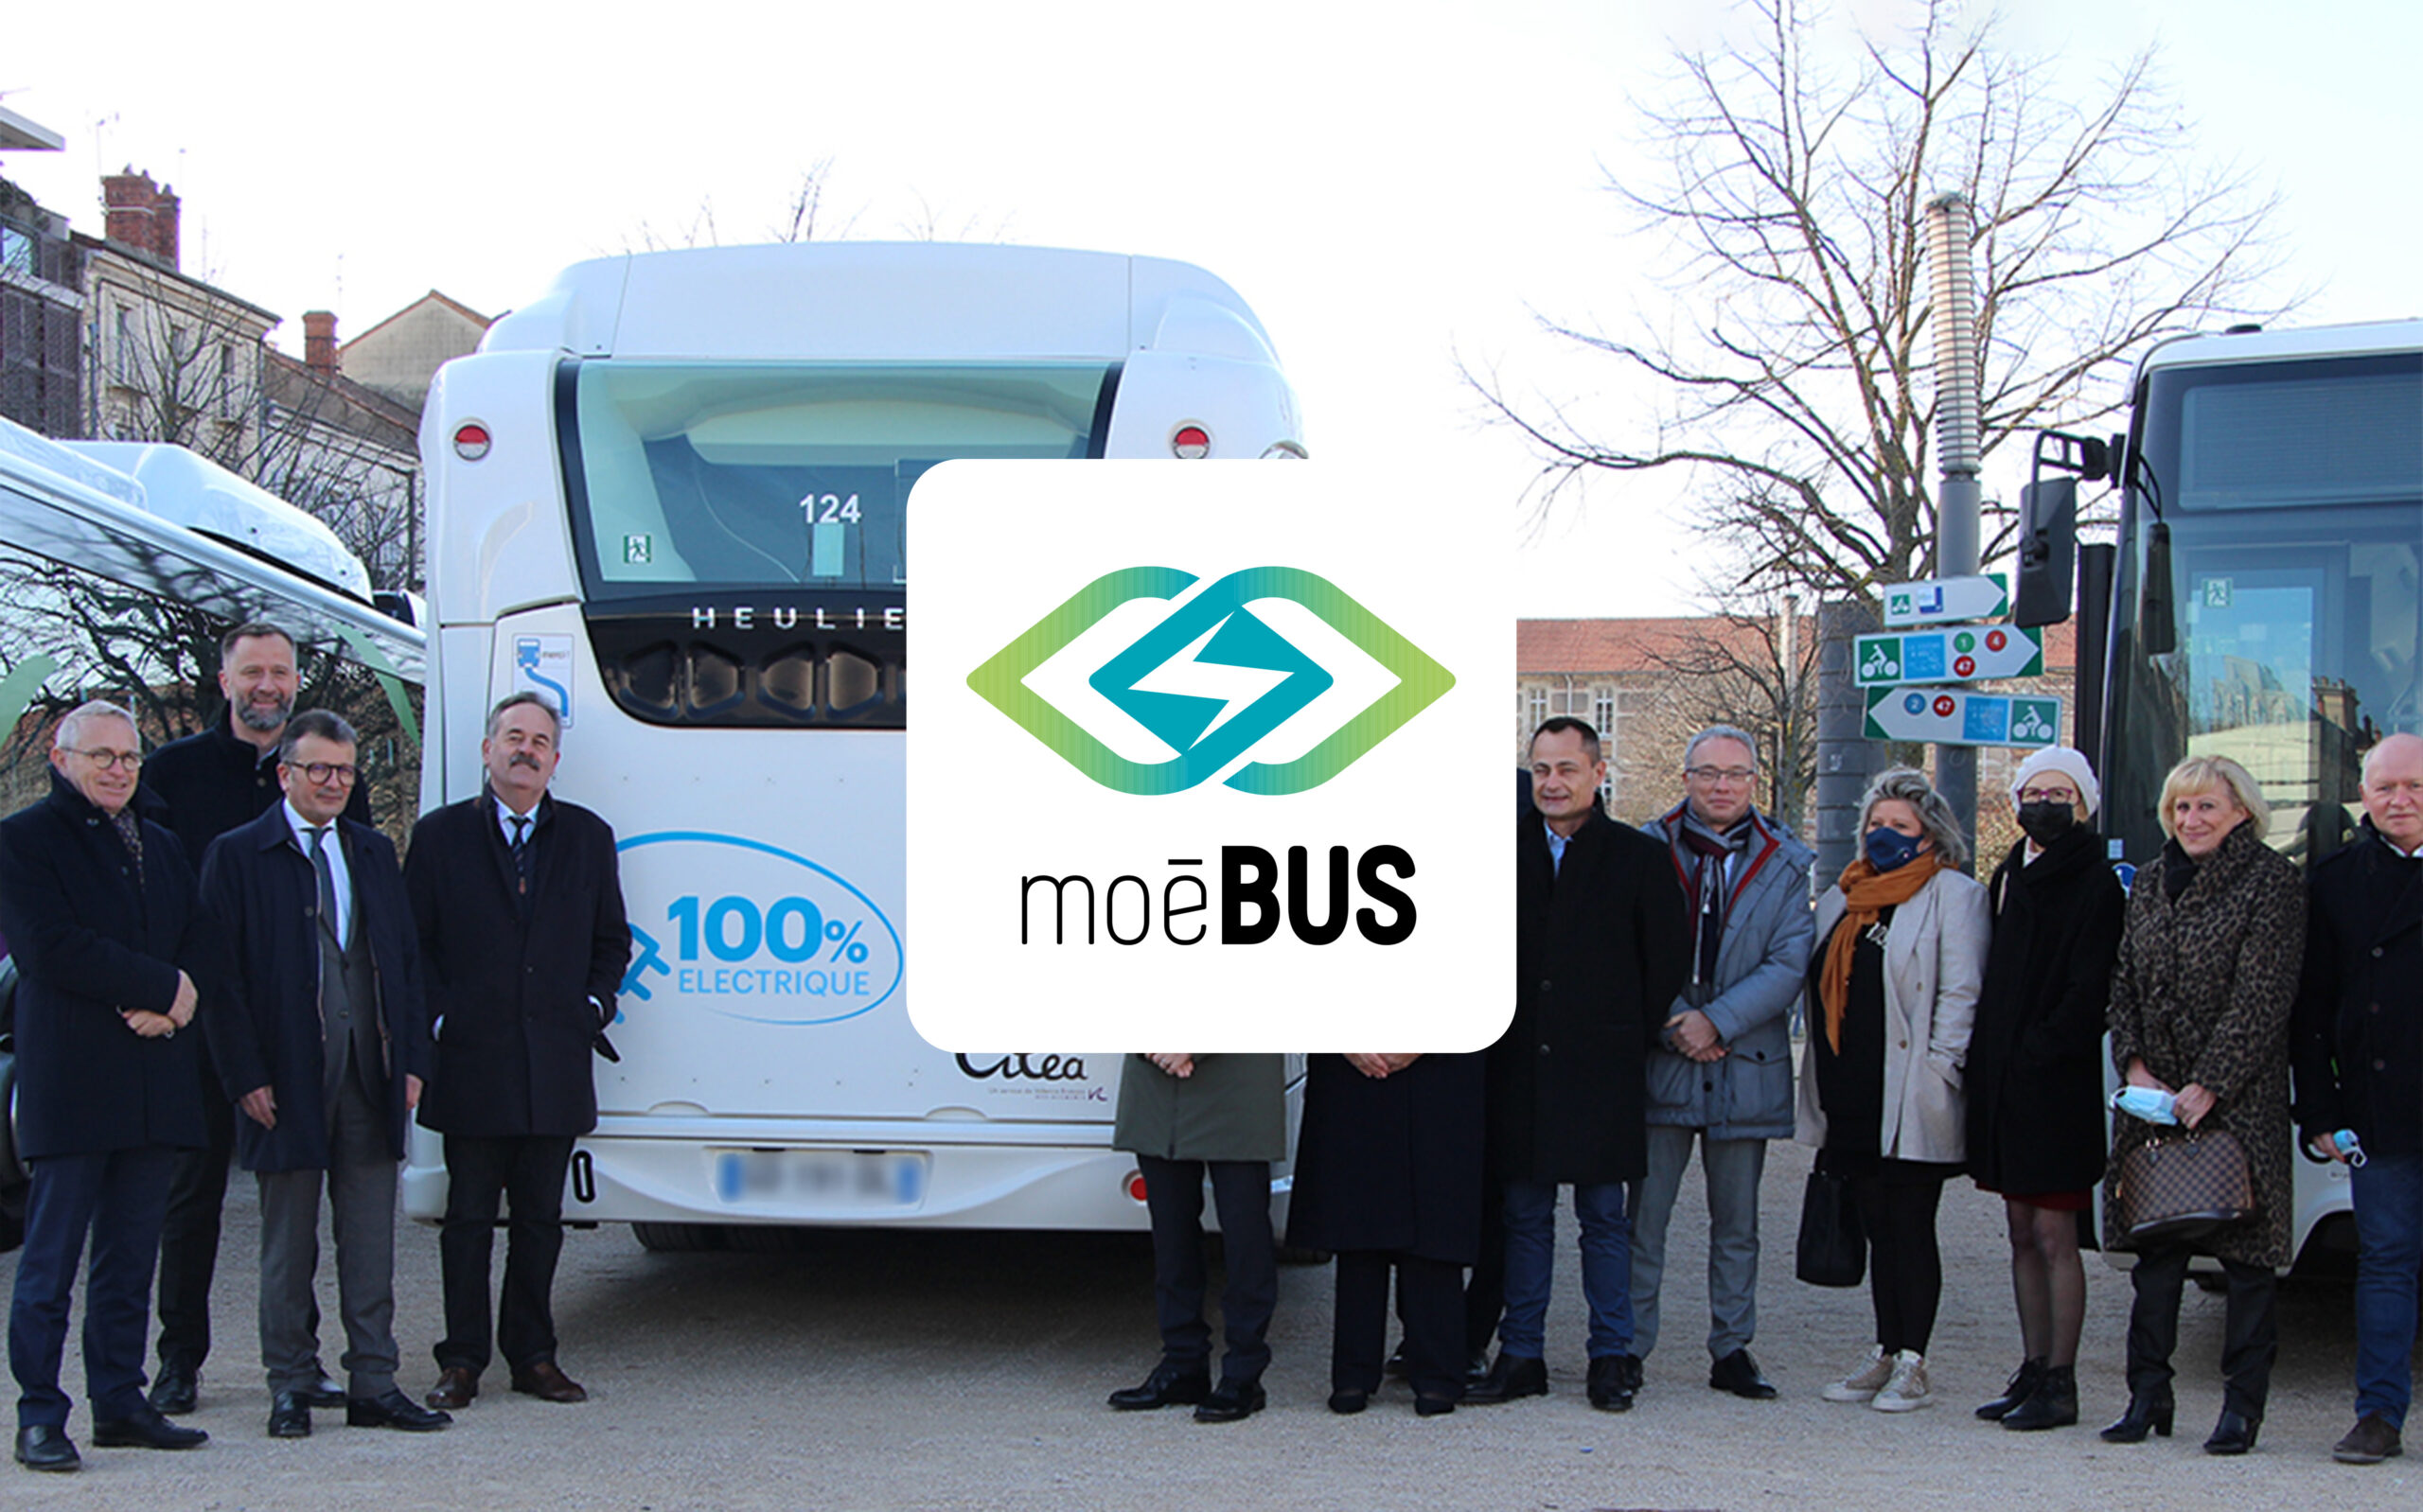 8_Moebus-bus électrique